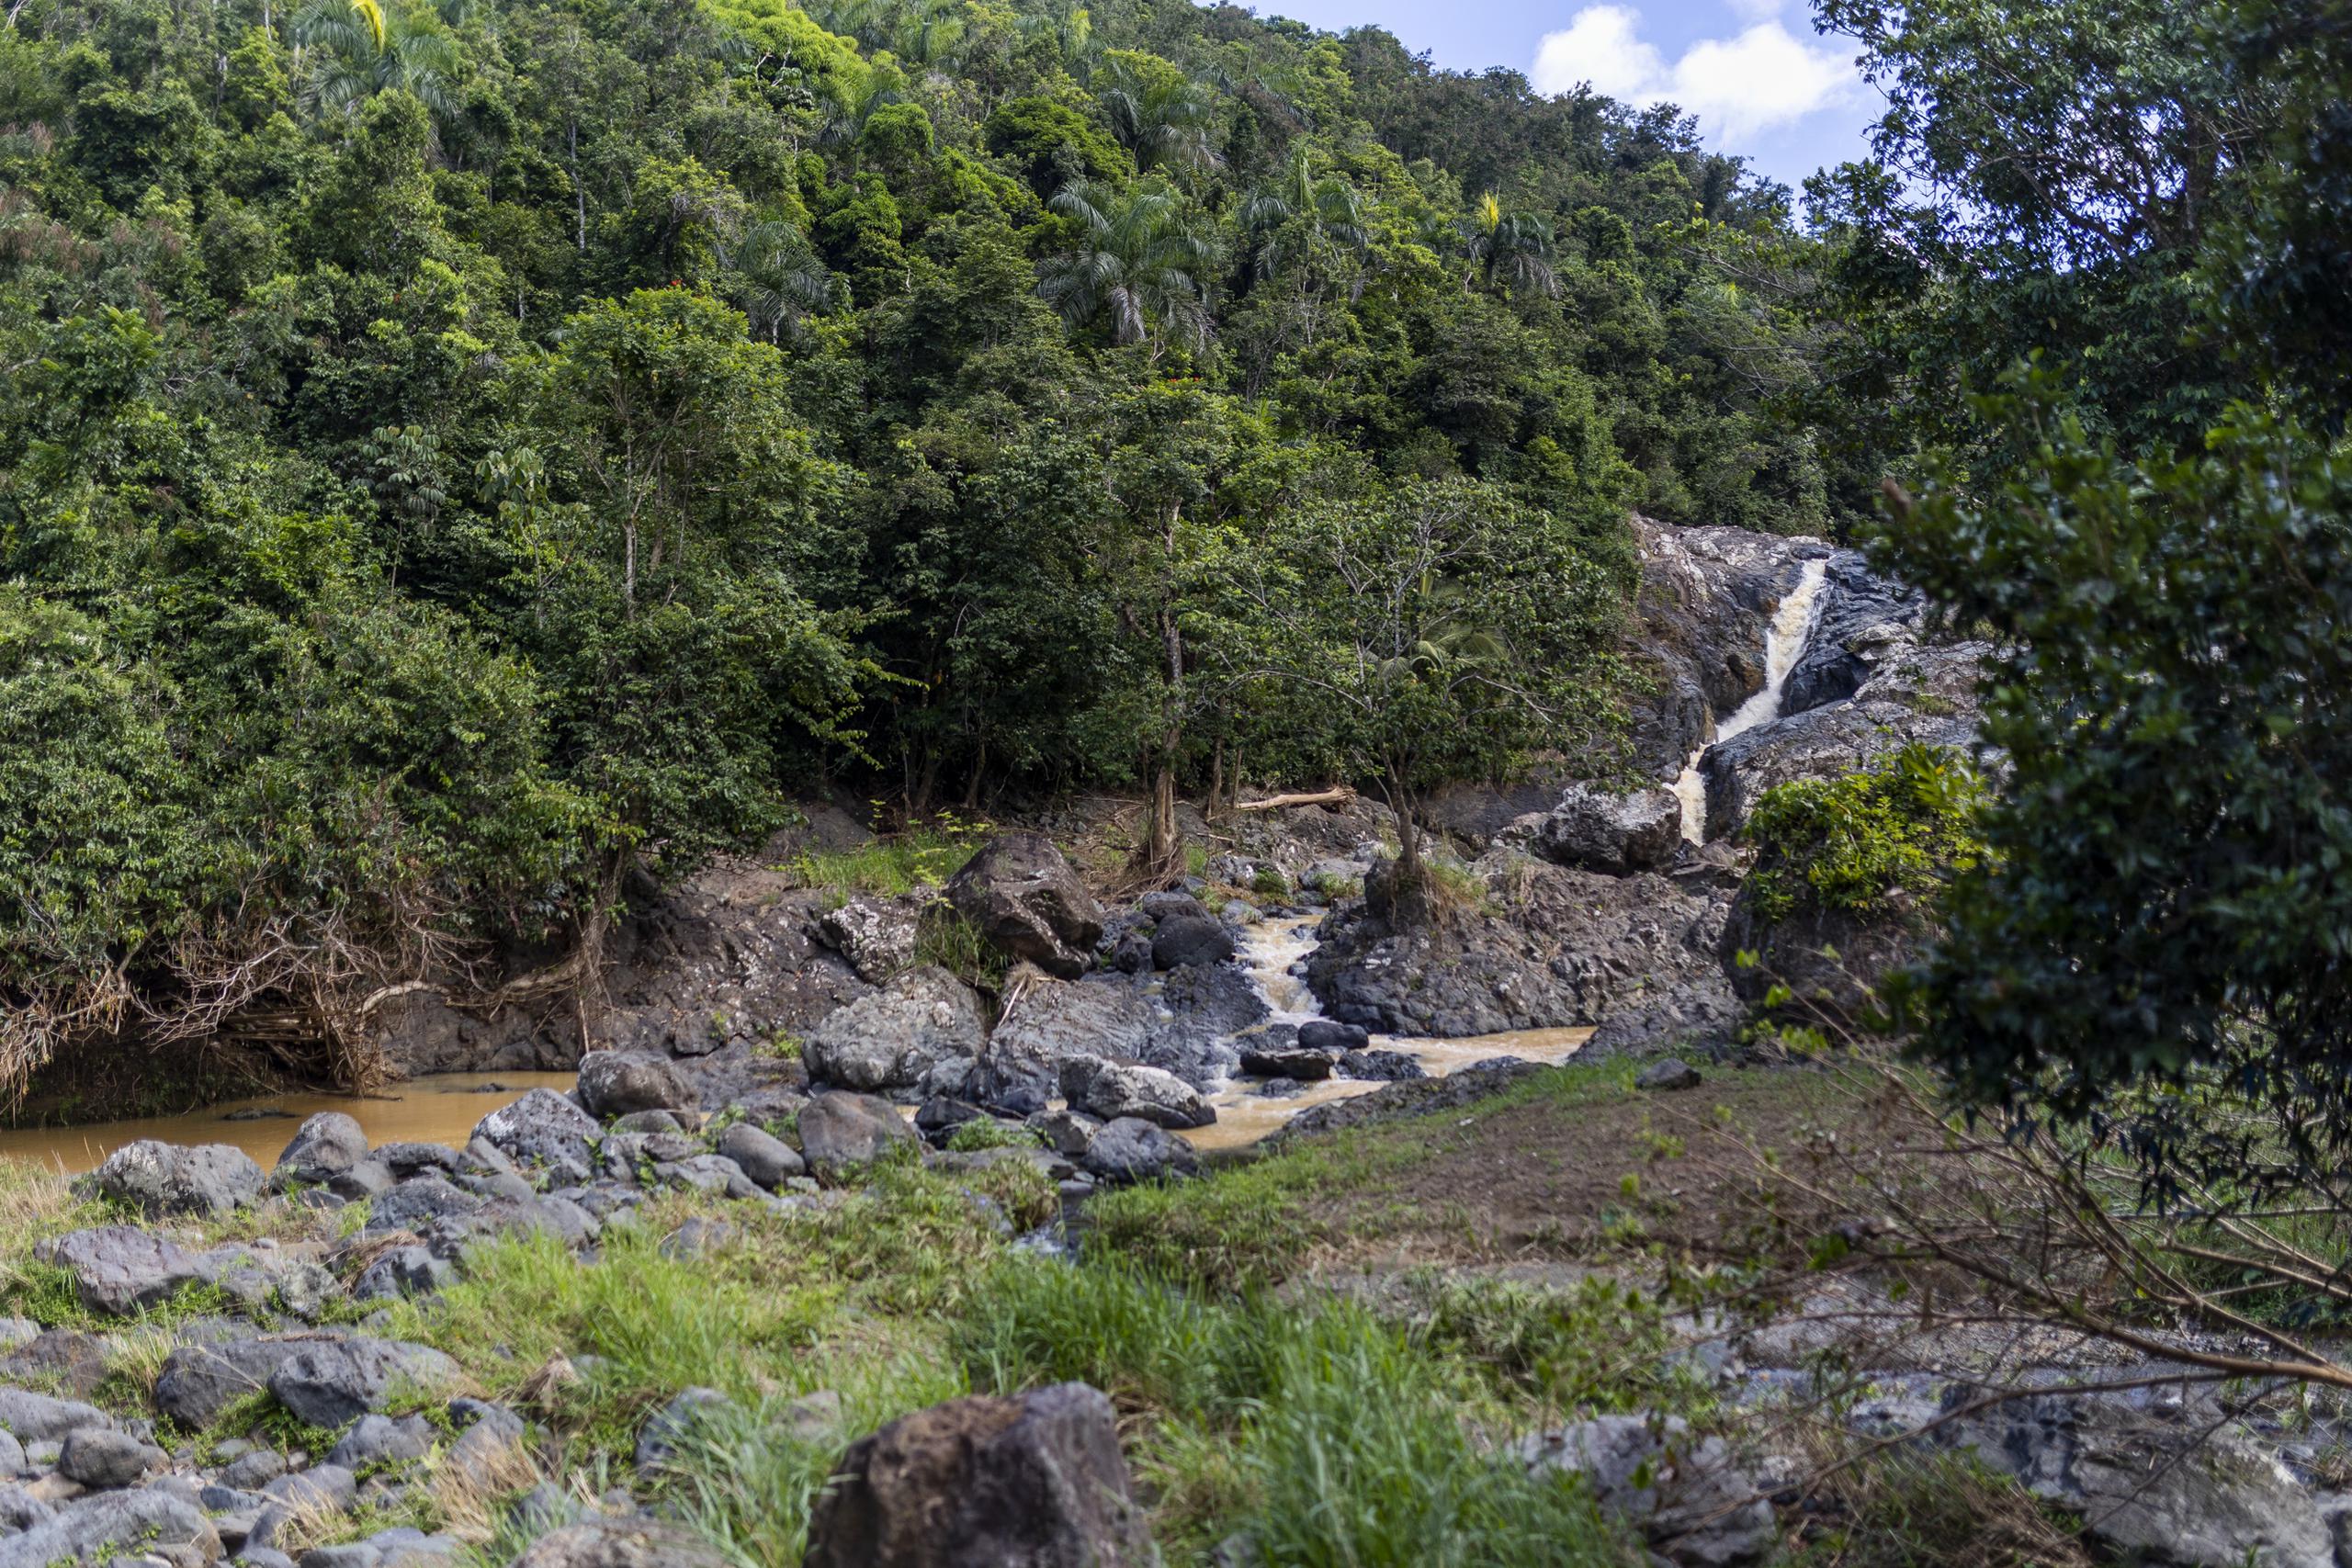 6 noviembre 2022. Hacienda Cascada, Aguas Buenas

Hacienda Cascada en Aguas Buenas, tiene una cascada que brota entre las piedras.